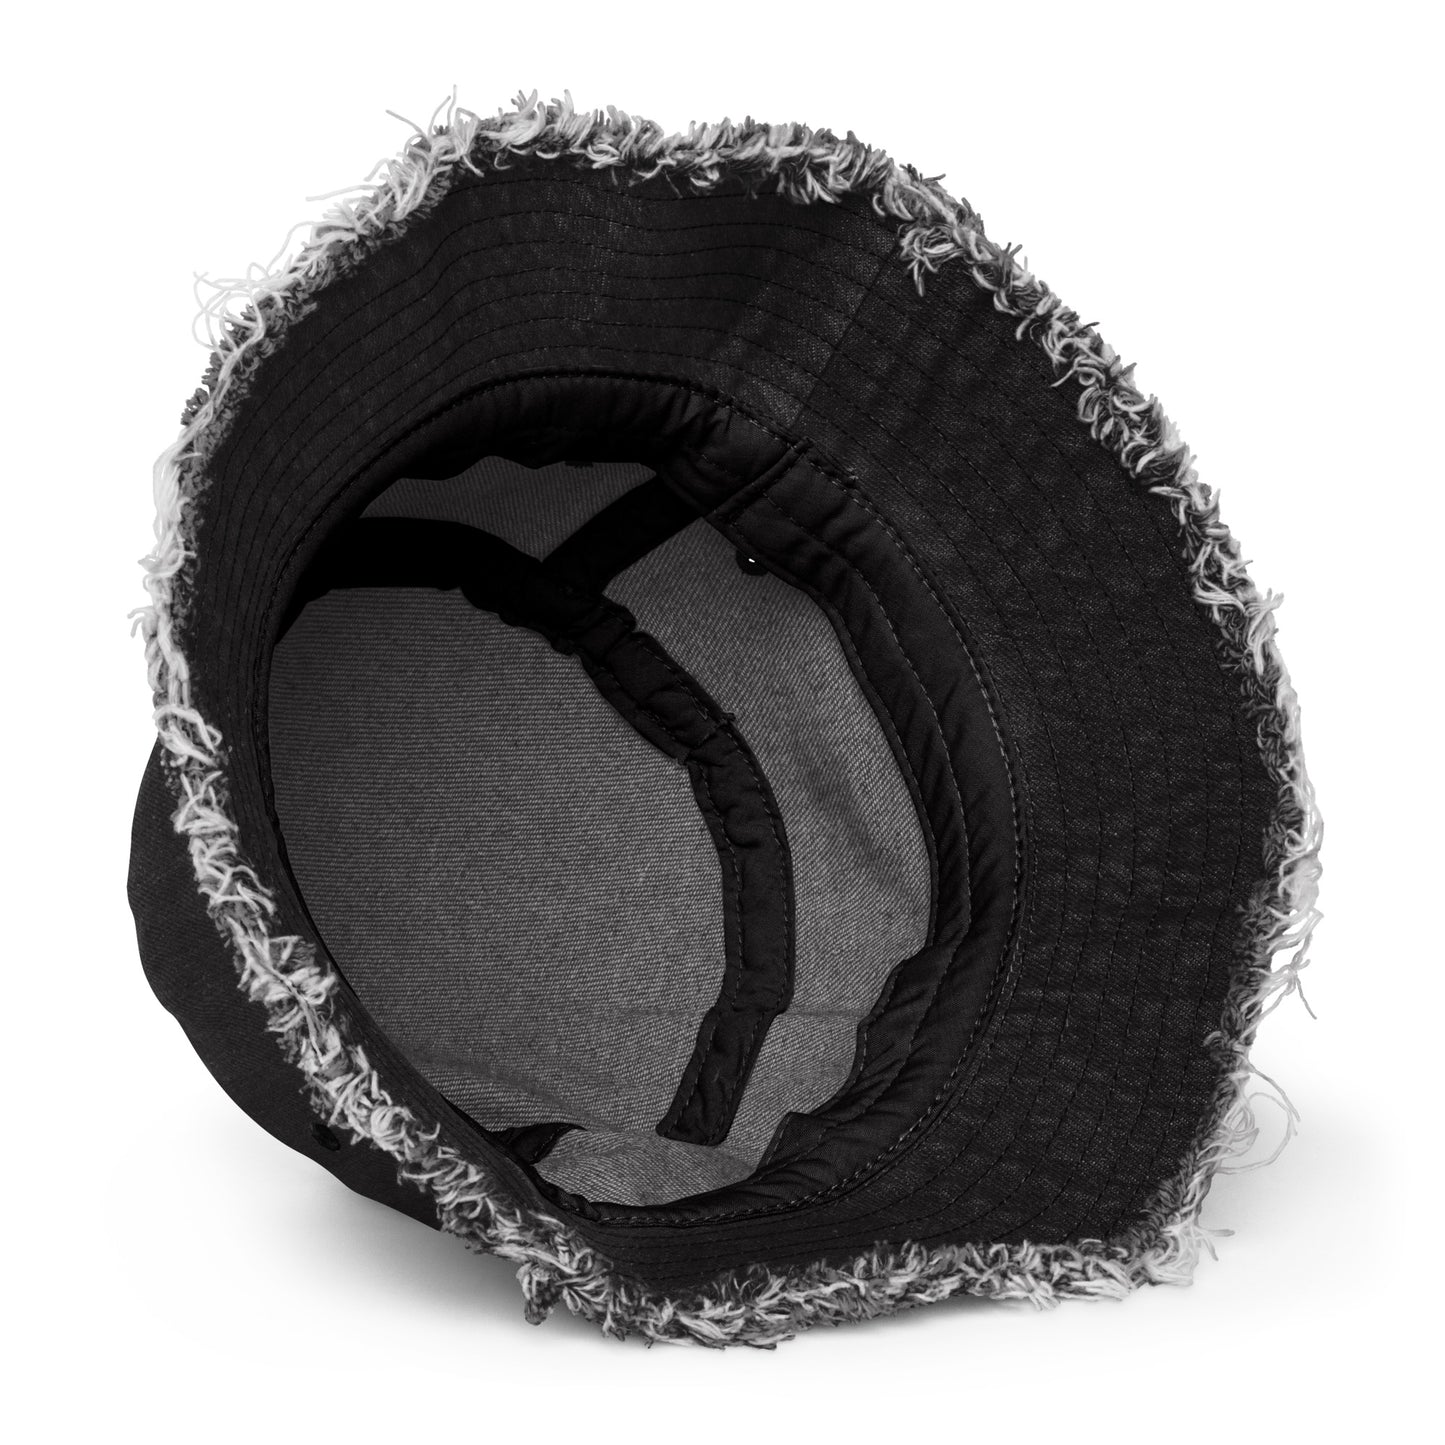 God's Kingdom- Distressed denim bucket hat